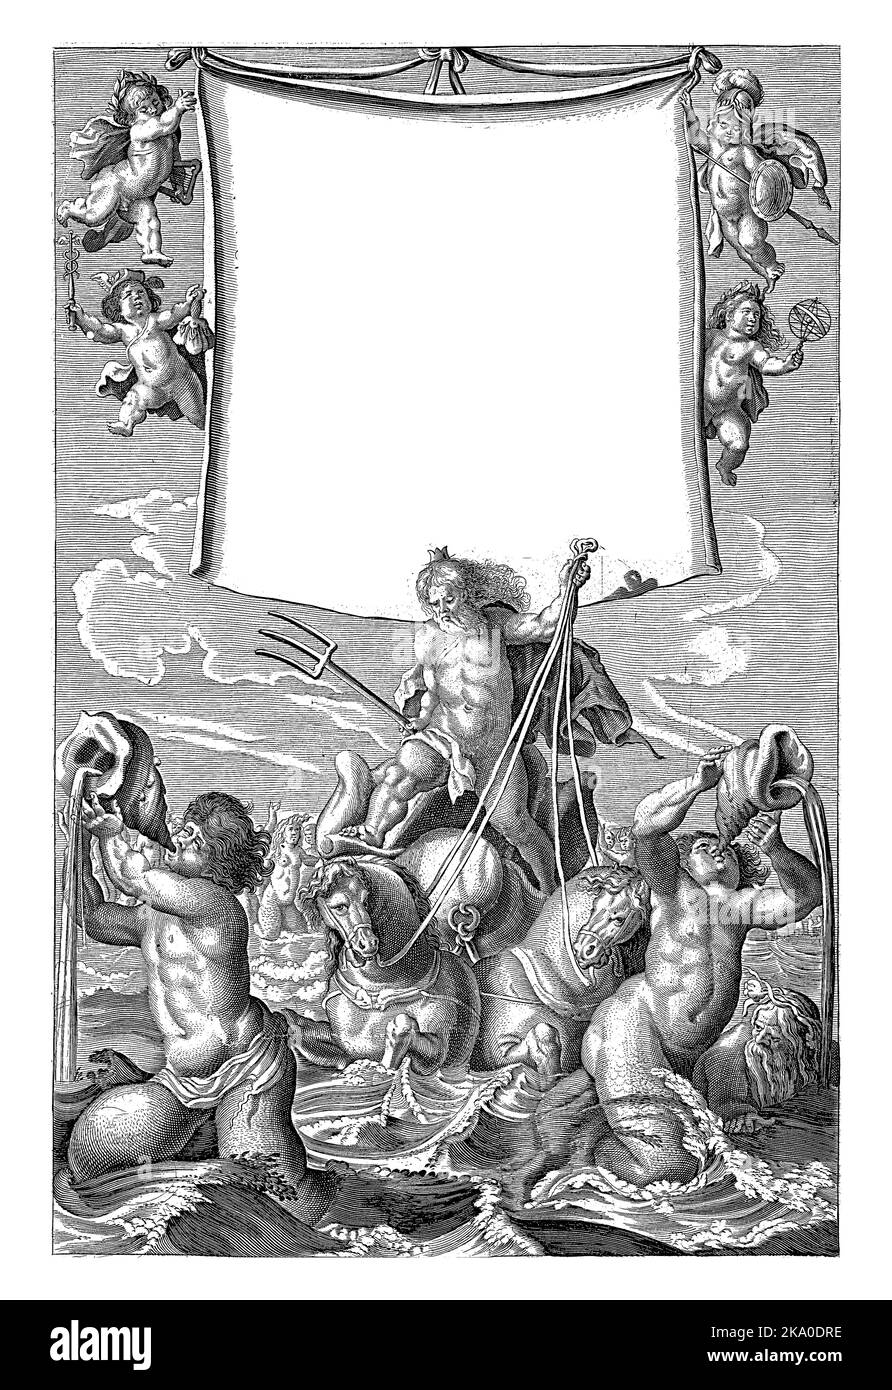 Neptun steht auf einer von Pferden gezeichneten Muschel inmitten von Meeresgeschöpfen, über ihm vier Putti, die ein Tuch mit Titel halten. Stockfoto